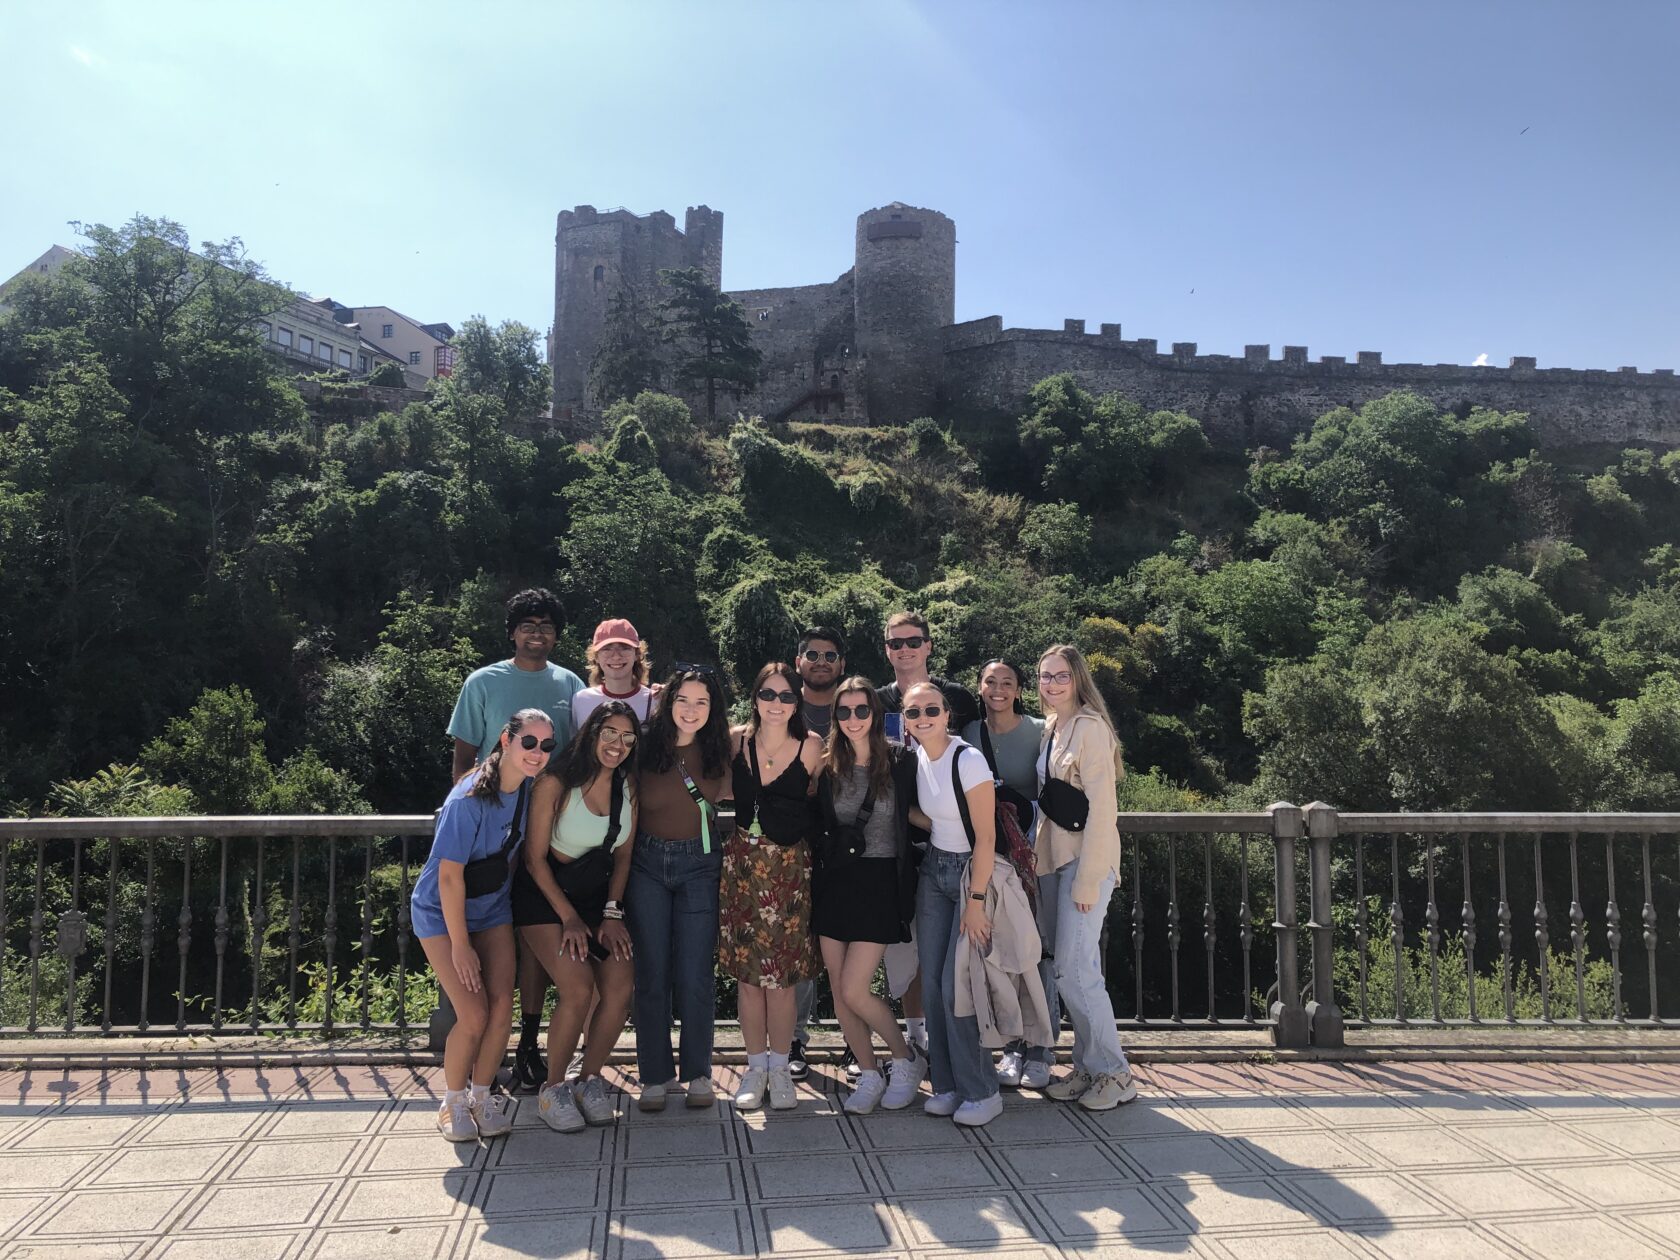 Atlantis students outside a castle in Ponferrada, Spain.